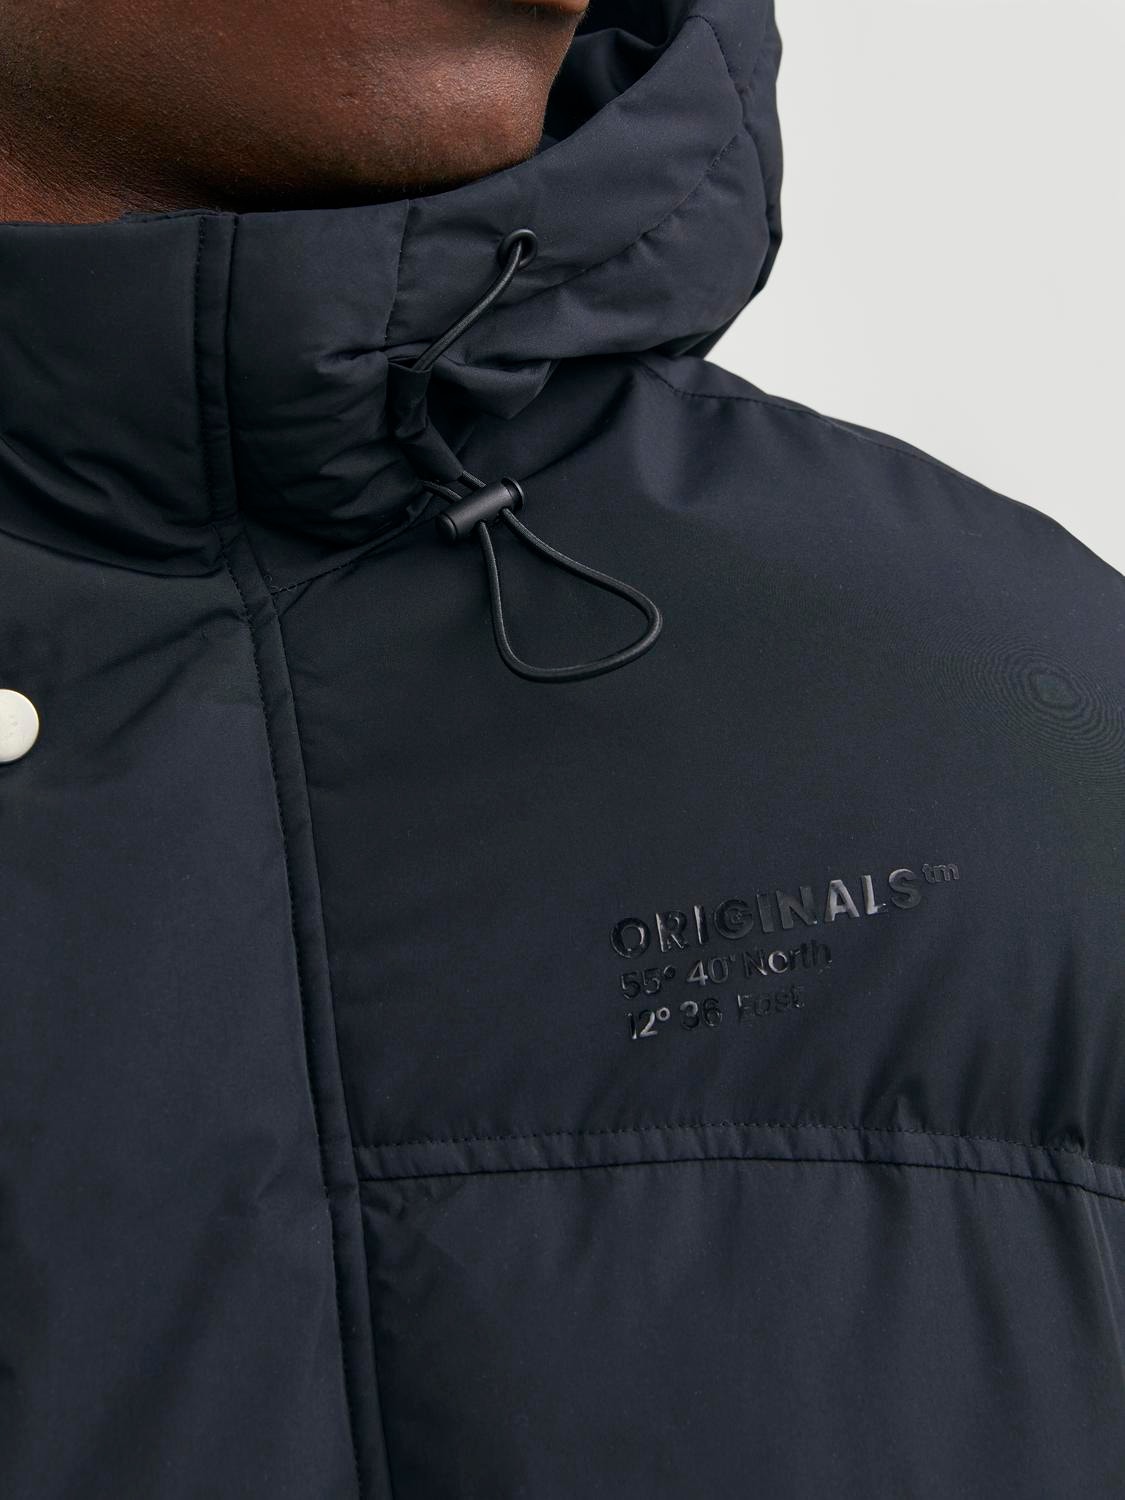 Jack & Jones Originals puffer jacket with hood in black